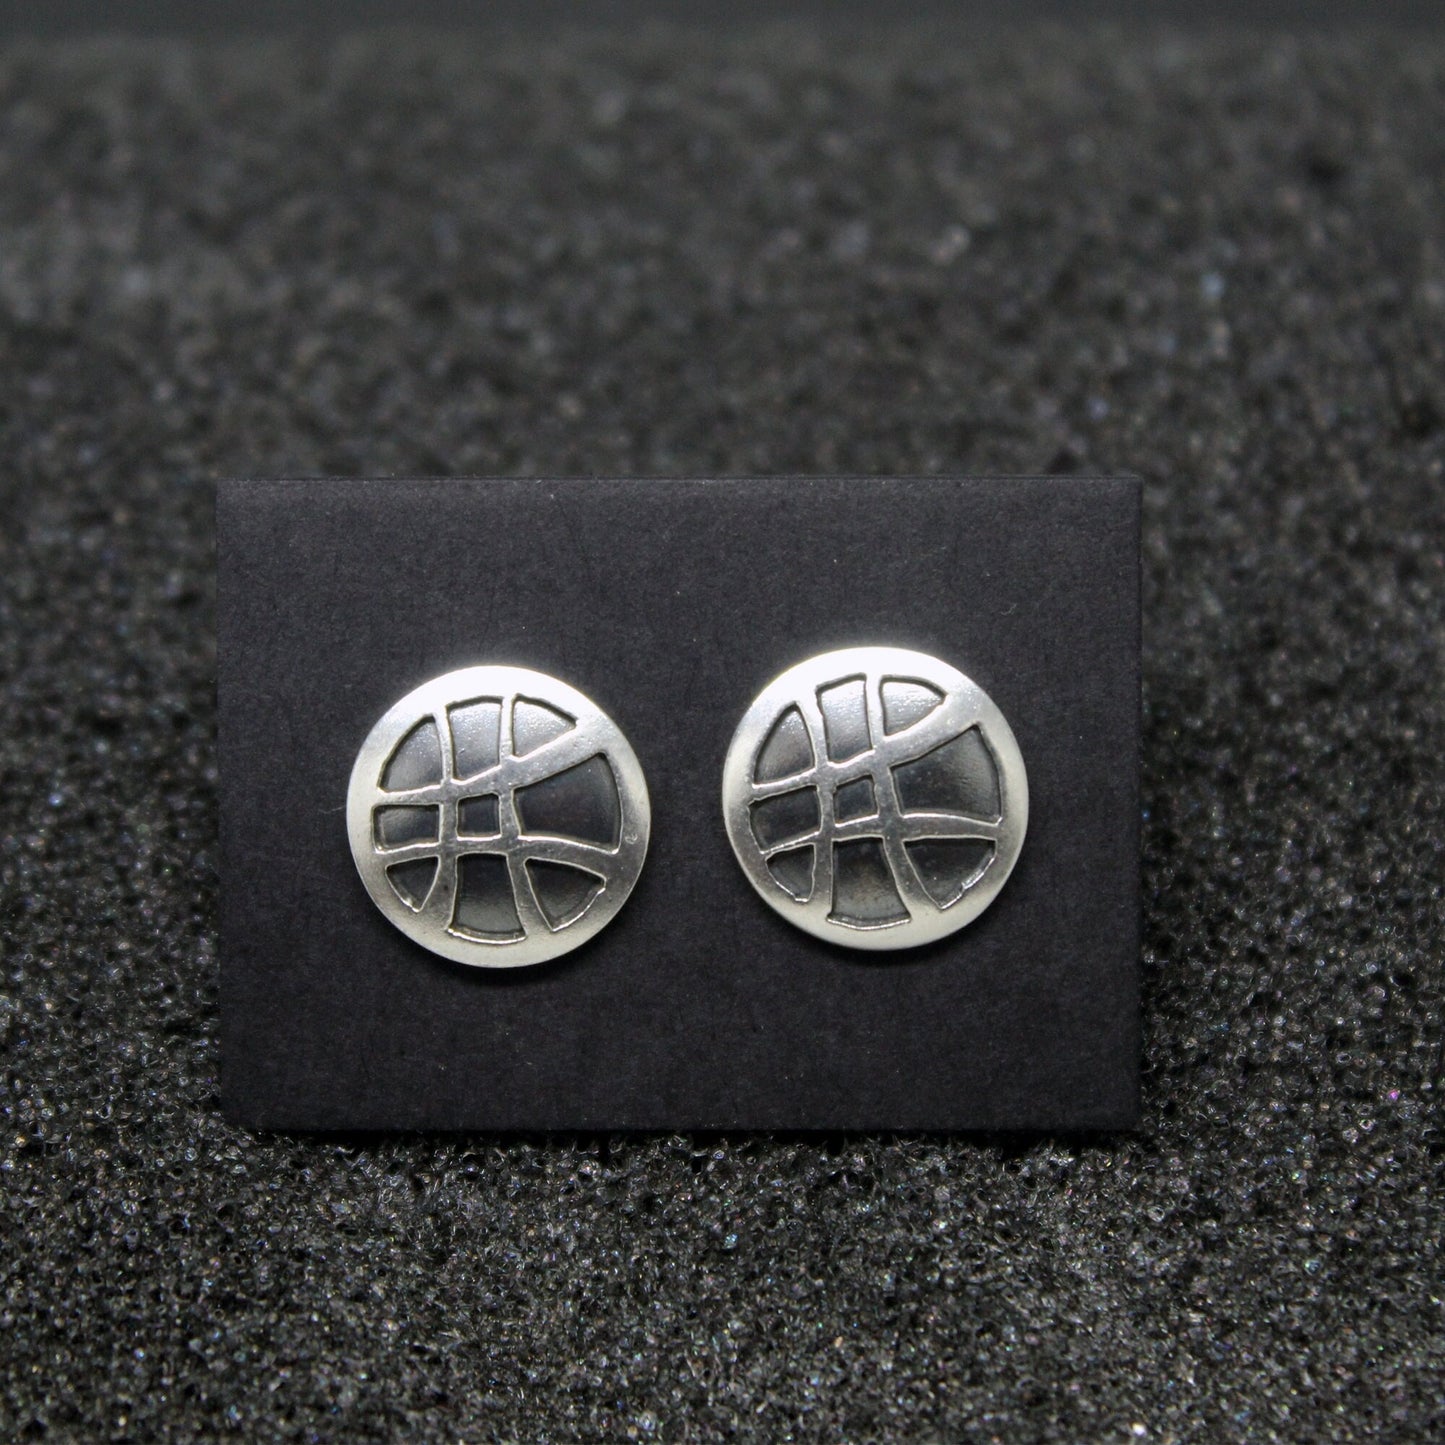 Doctor Strange earrings, Seal of Vishanti in 925 silver